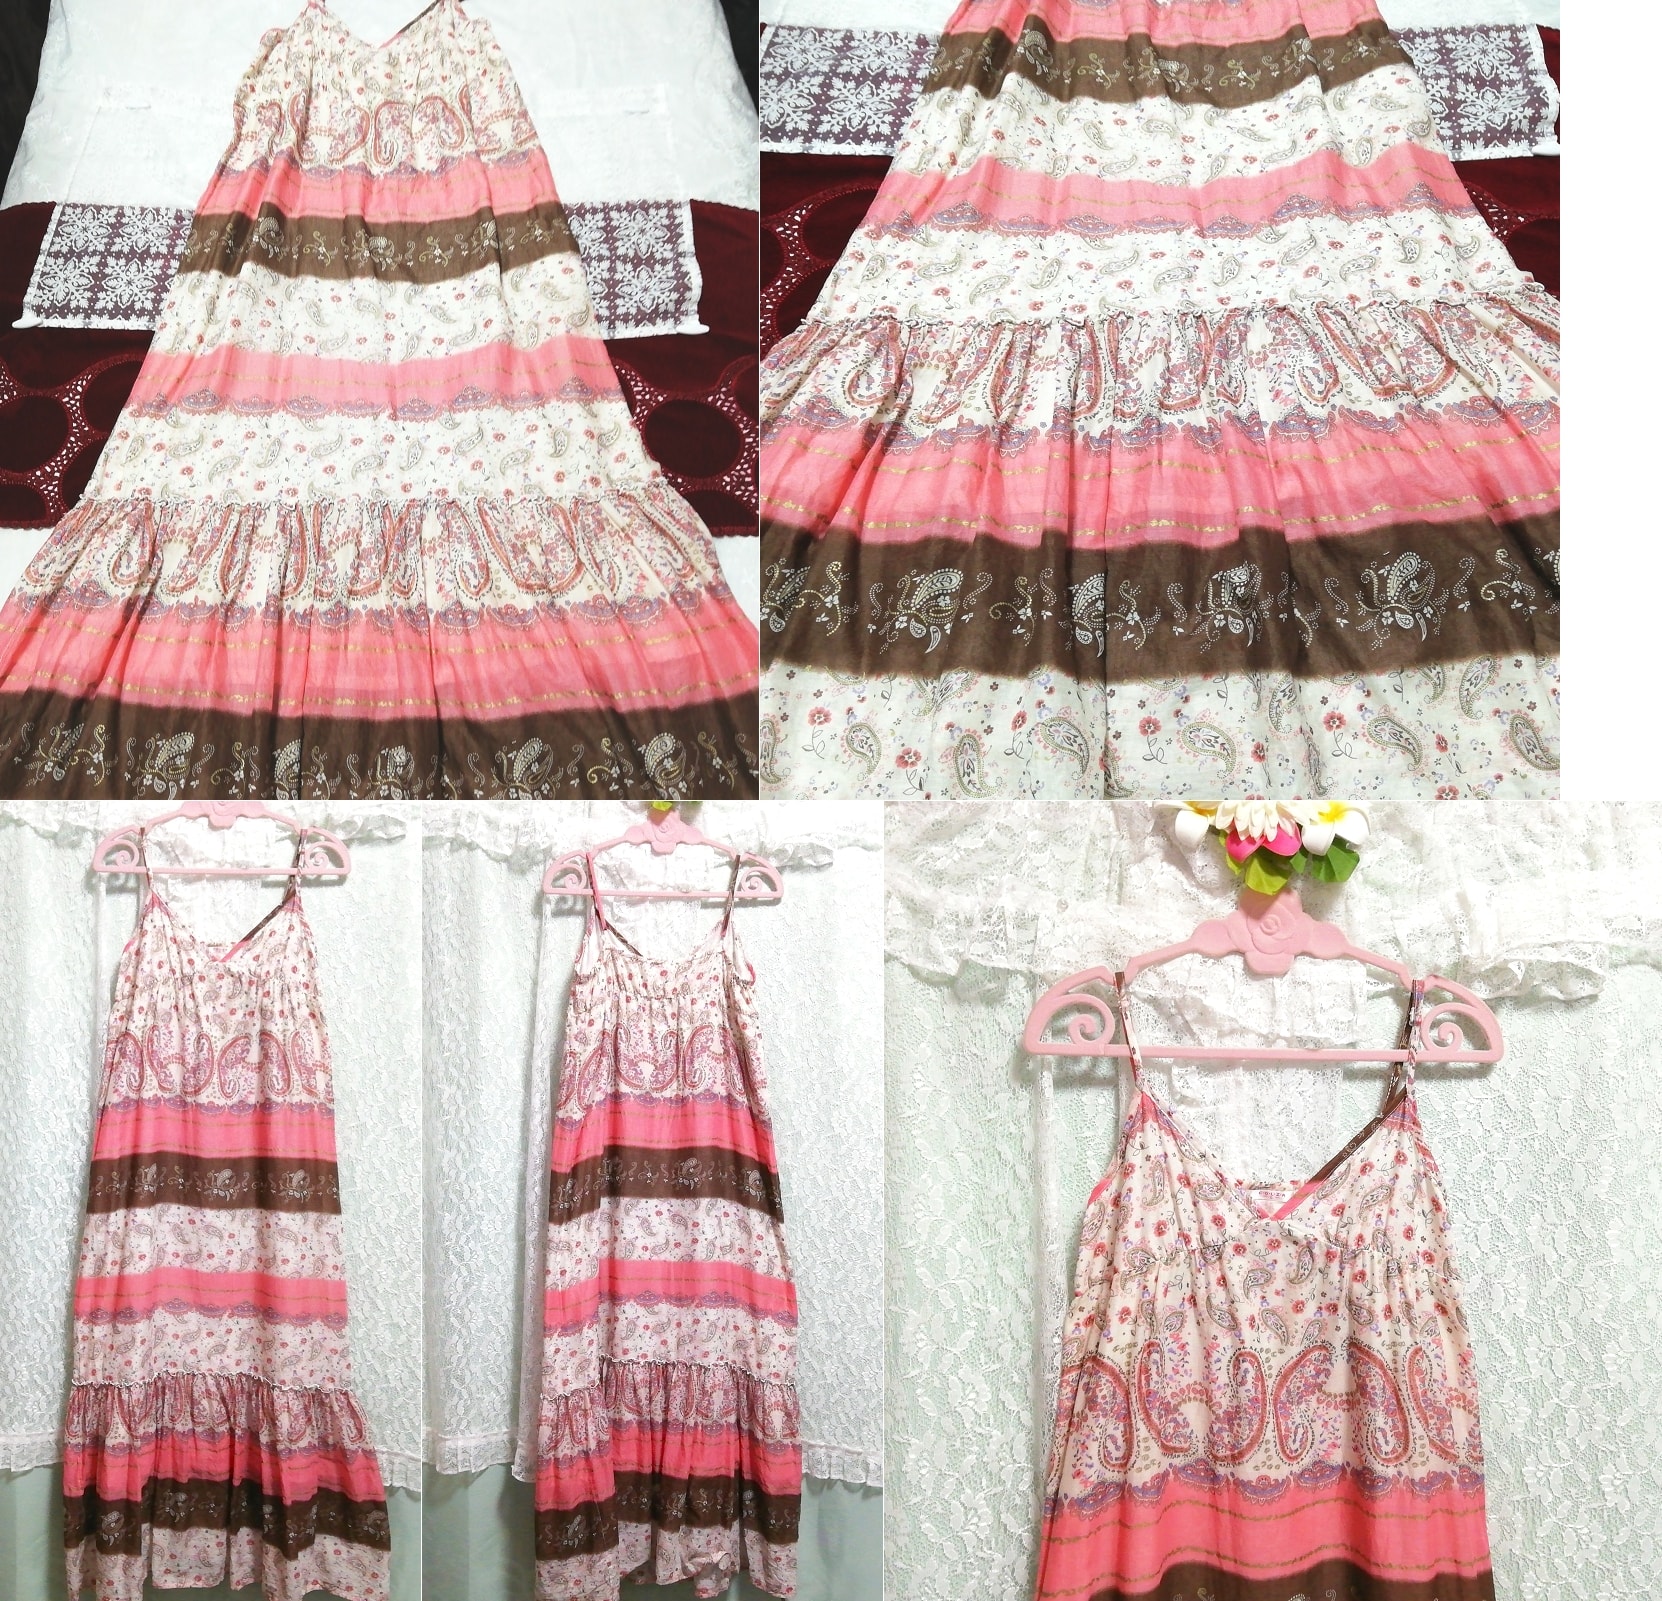 Rosabraunes Negligé-Nachthemd aus Baumwolle, Maxi-Camisole-Kleid, Babydoll-Kleid, Mode, Frauenmode, Leibchen